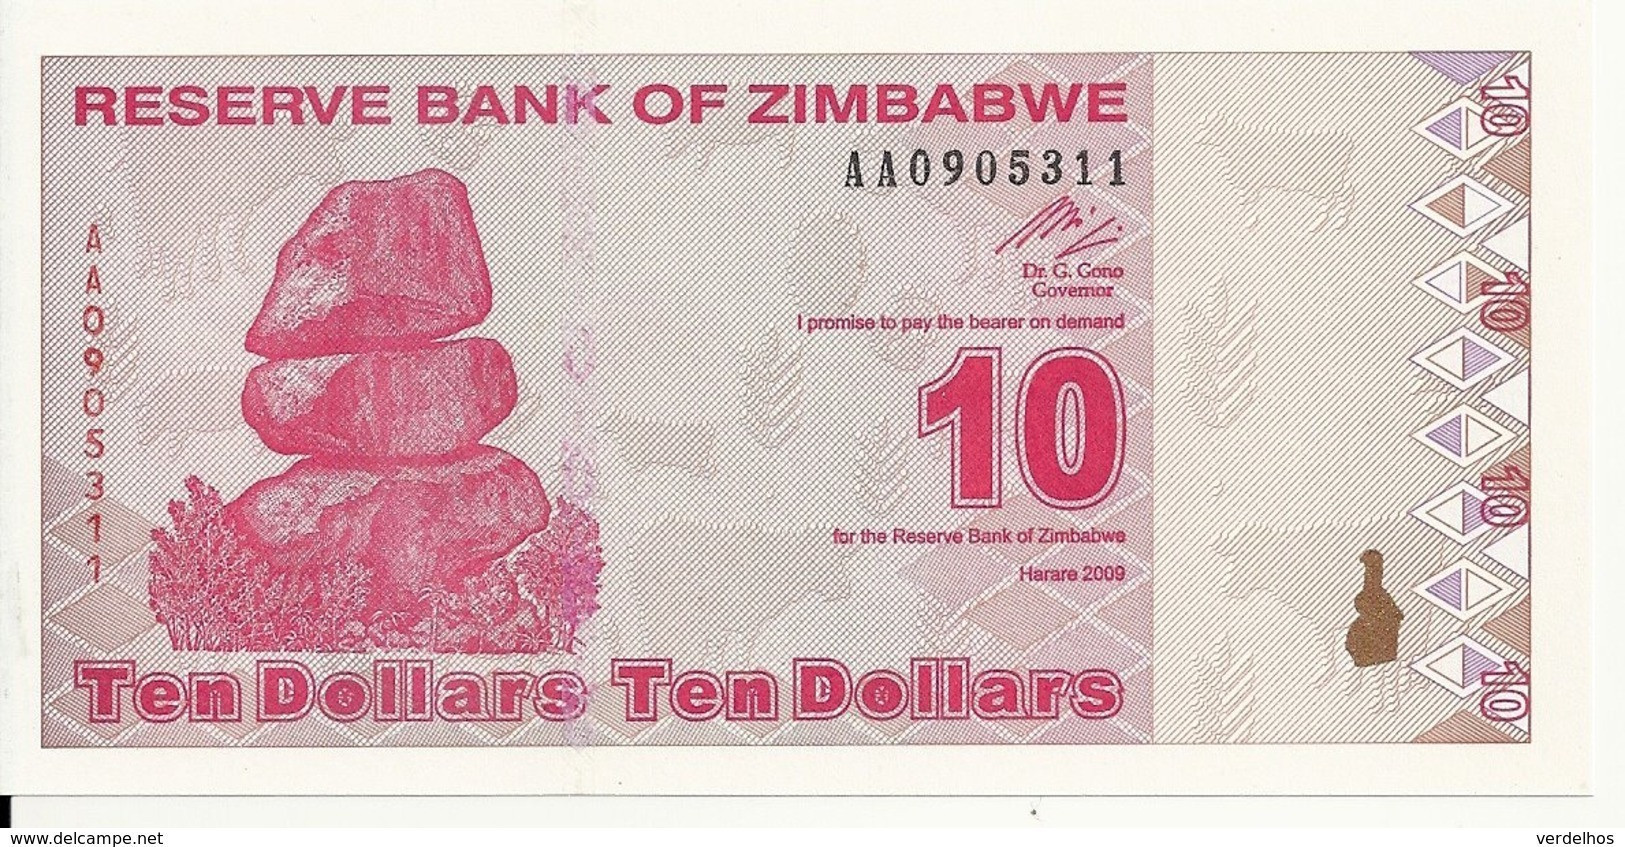 ZIMBABWE 10 DOLLARS 2009 UNC P 94 - Zimbabwe